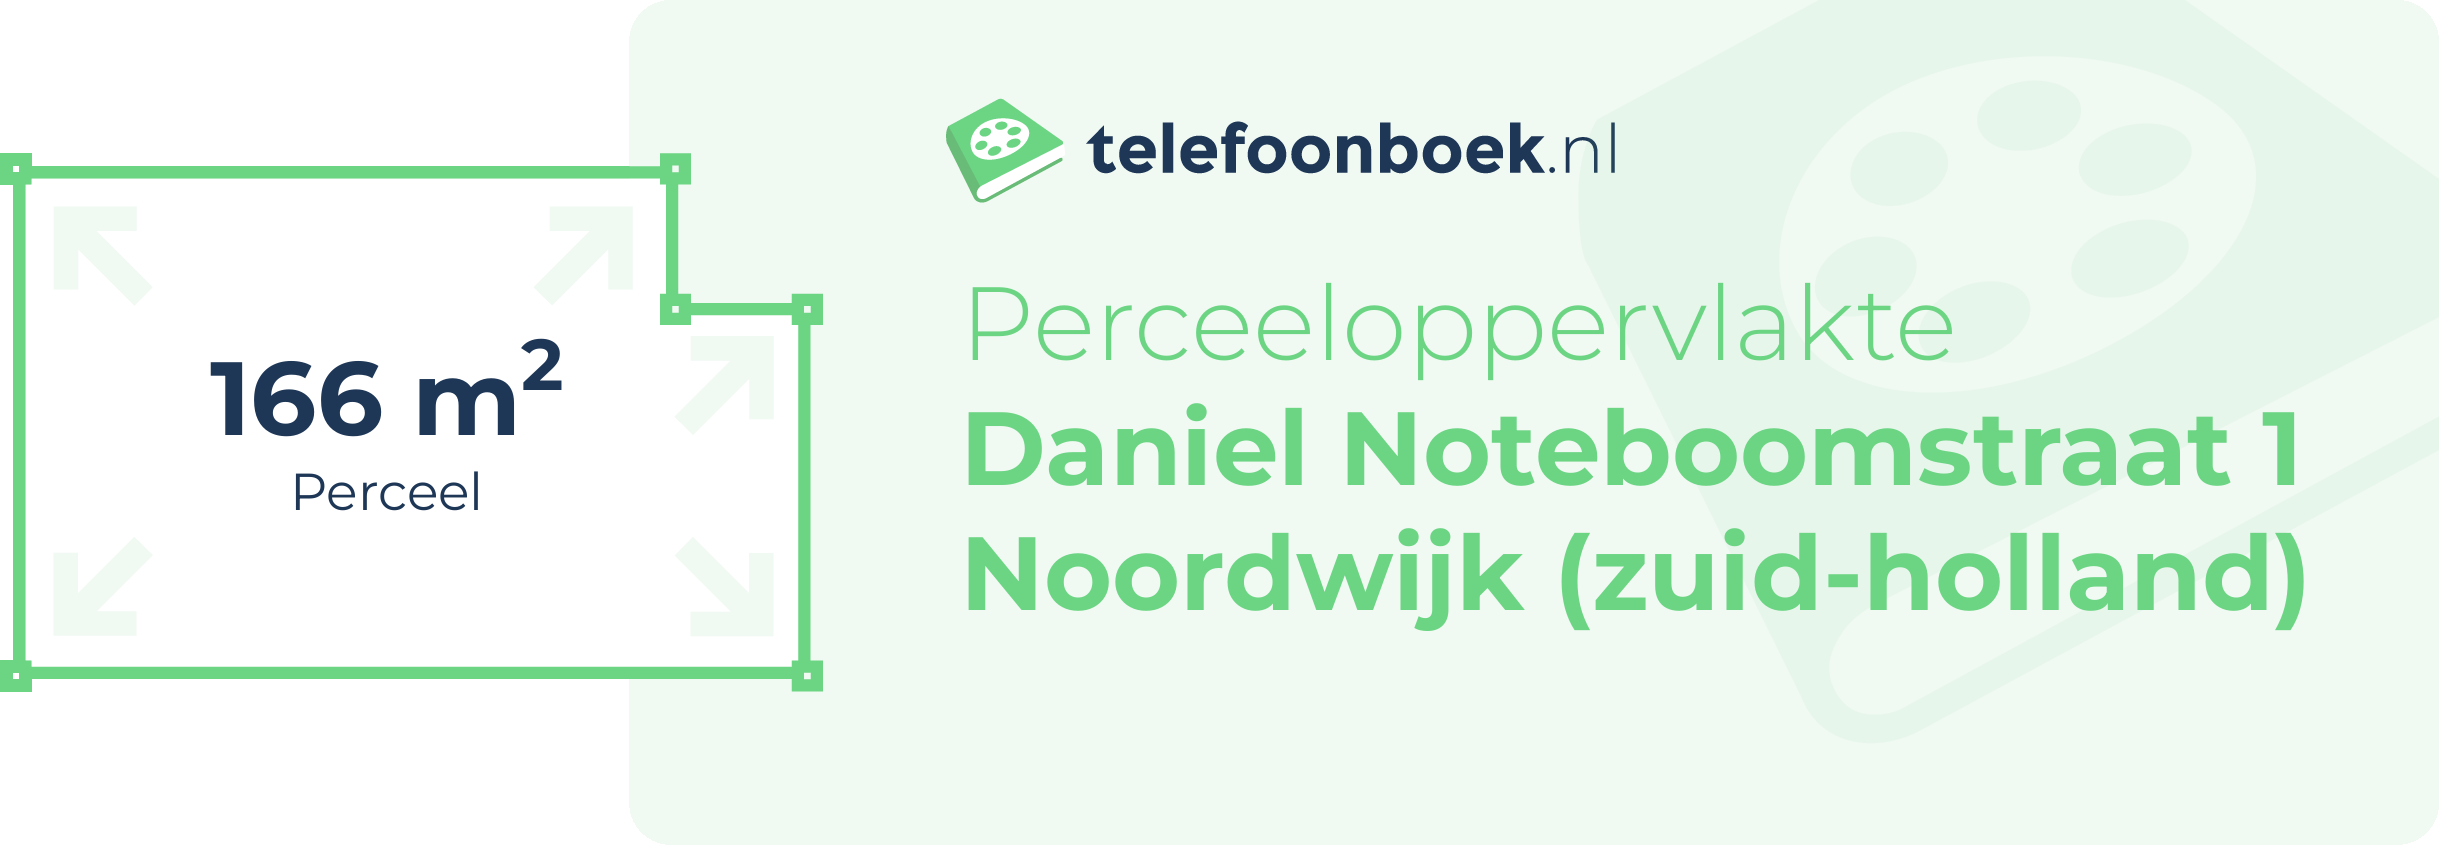 Perceeloppervlakte Daniel Noteboomstraat 1 Noordwijk (Zuid-Holland)